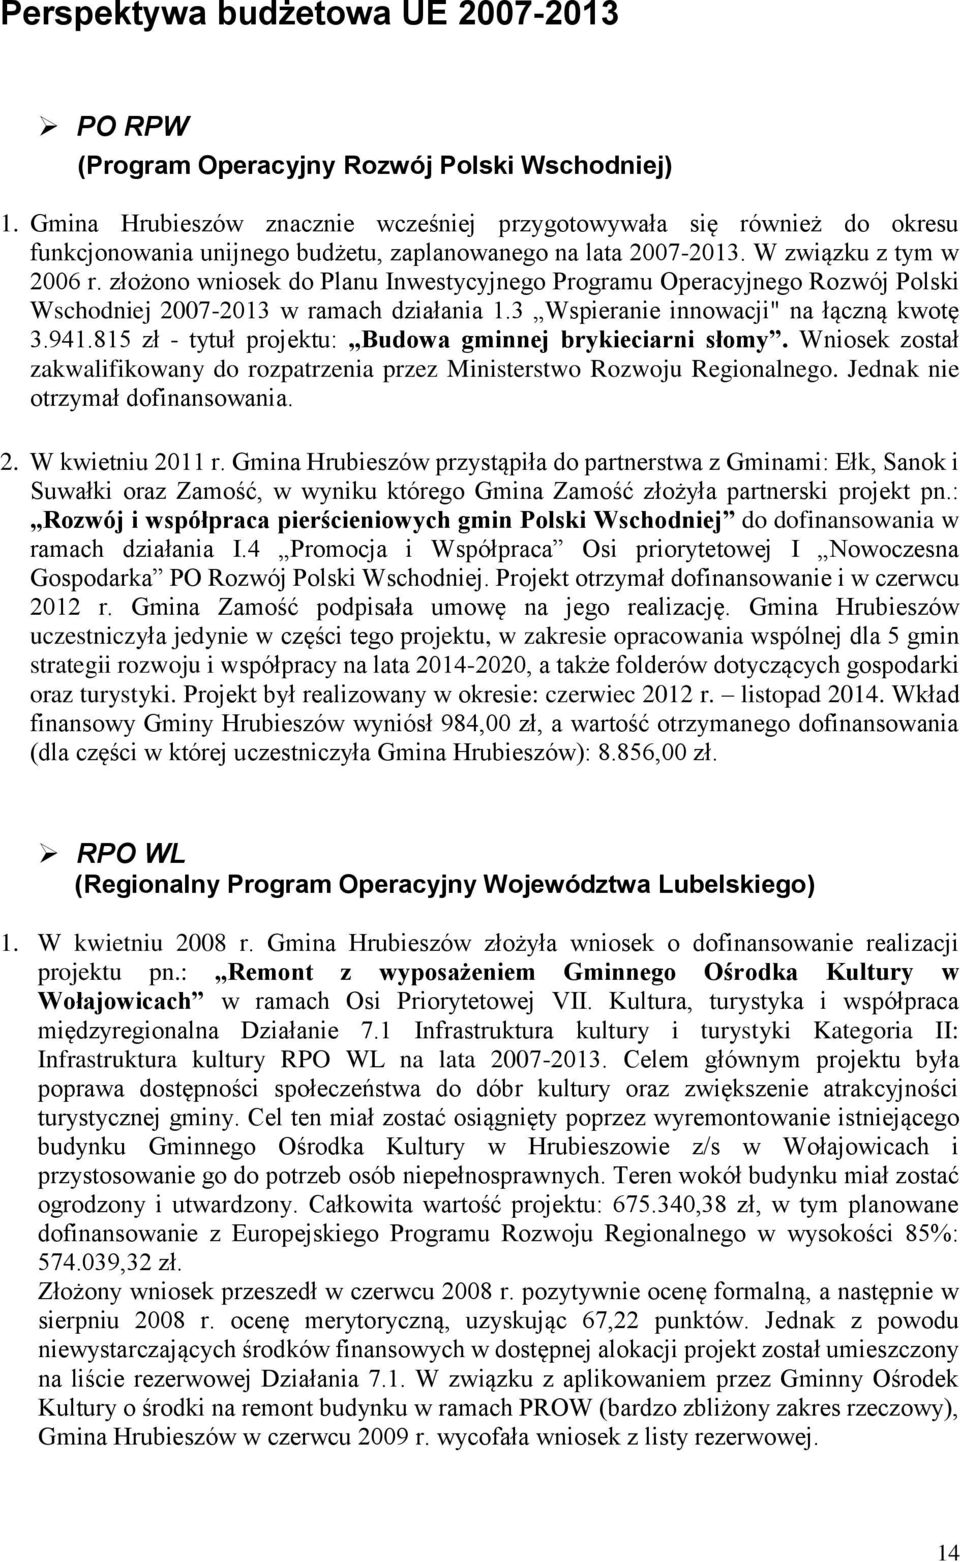 złożono wniosek do Planu Inwestycyjnego Programu Operacyjnego Rozwój Polski Wschodniej 2007-2013 w ramach działania 1.3 Wspieranie innowacji" na łączną kwotę 3.941.